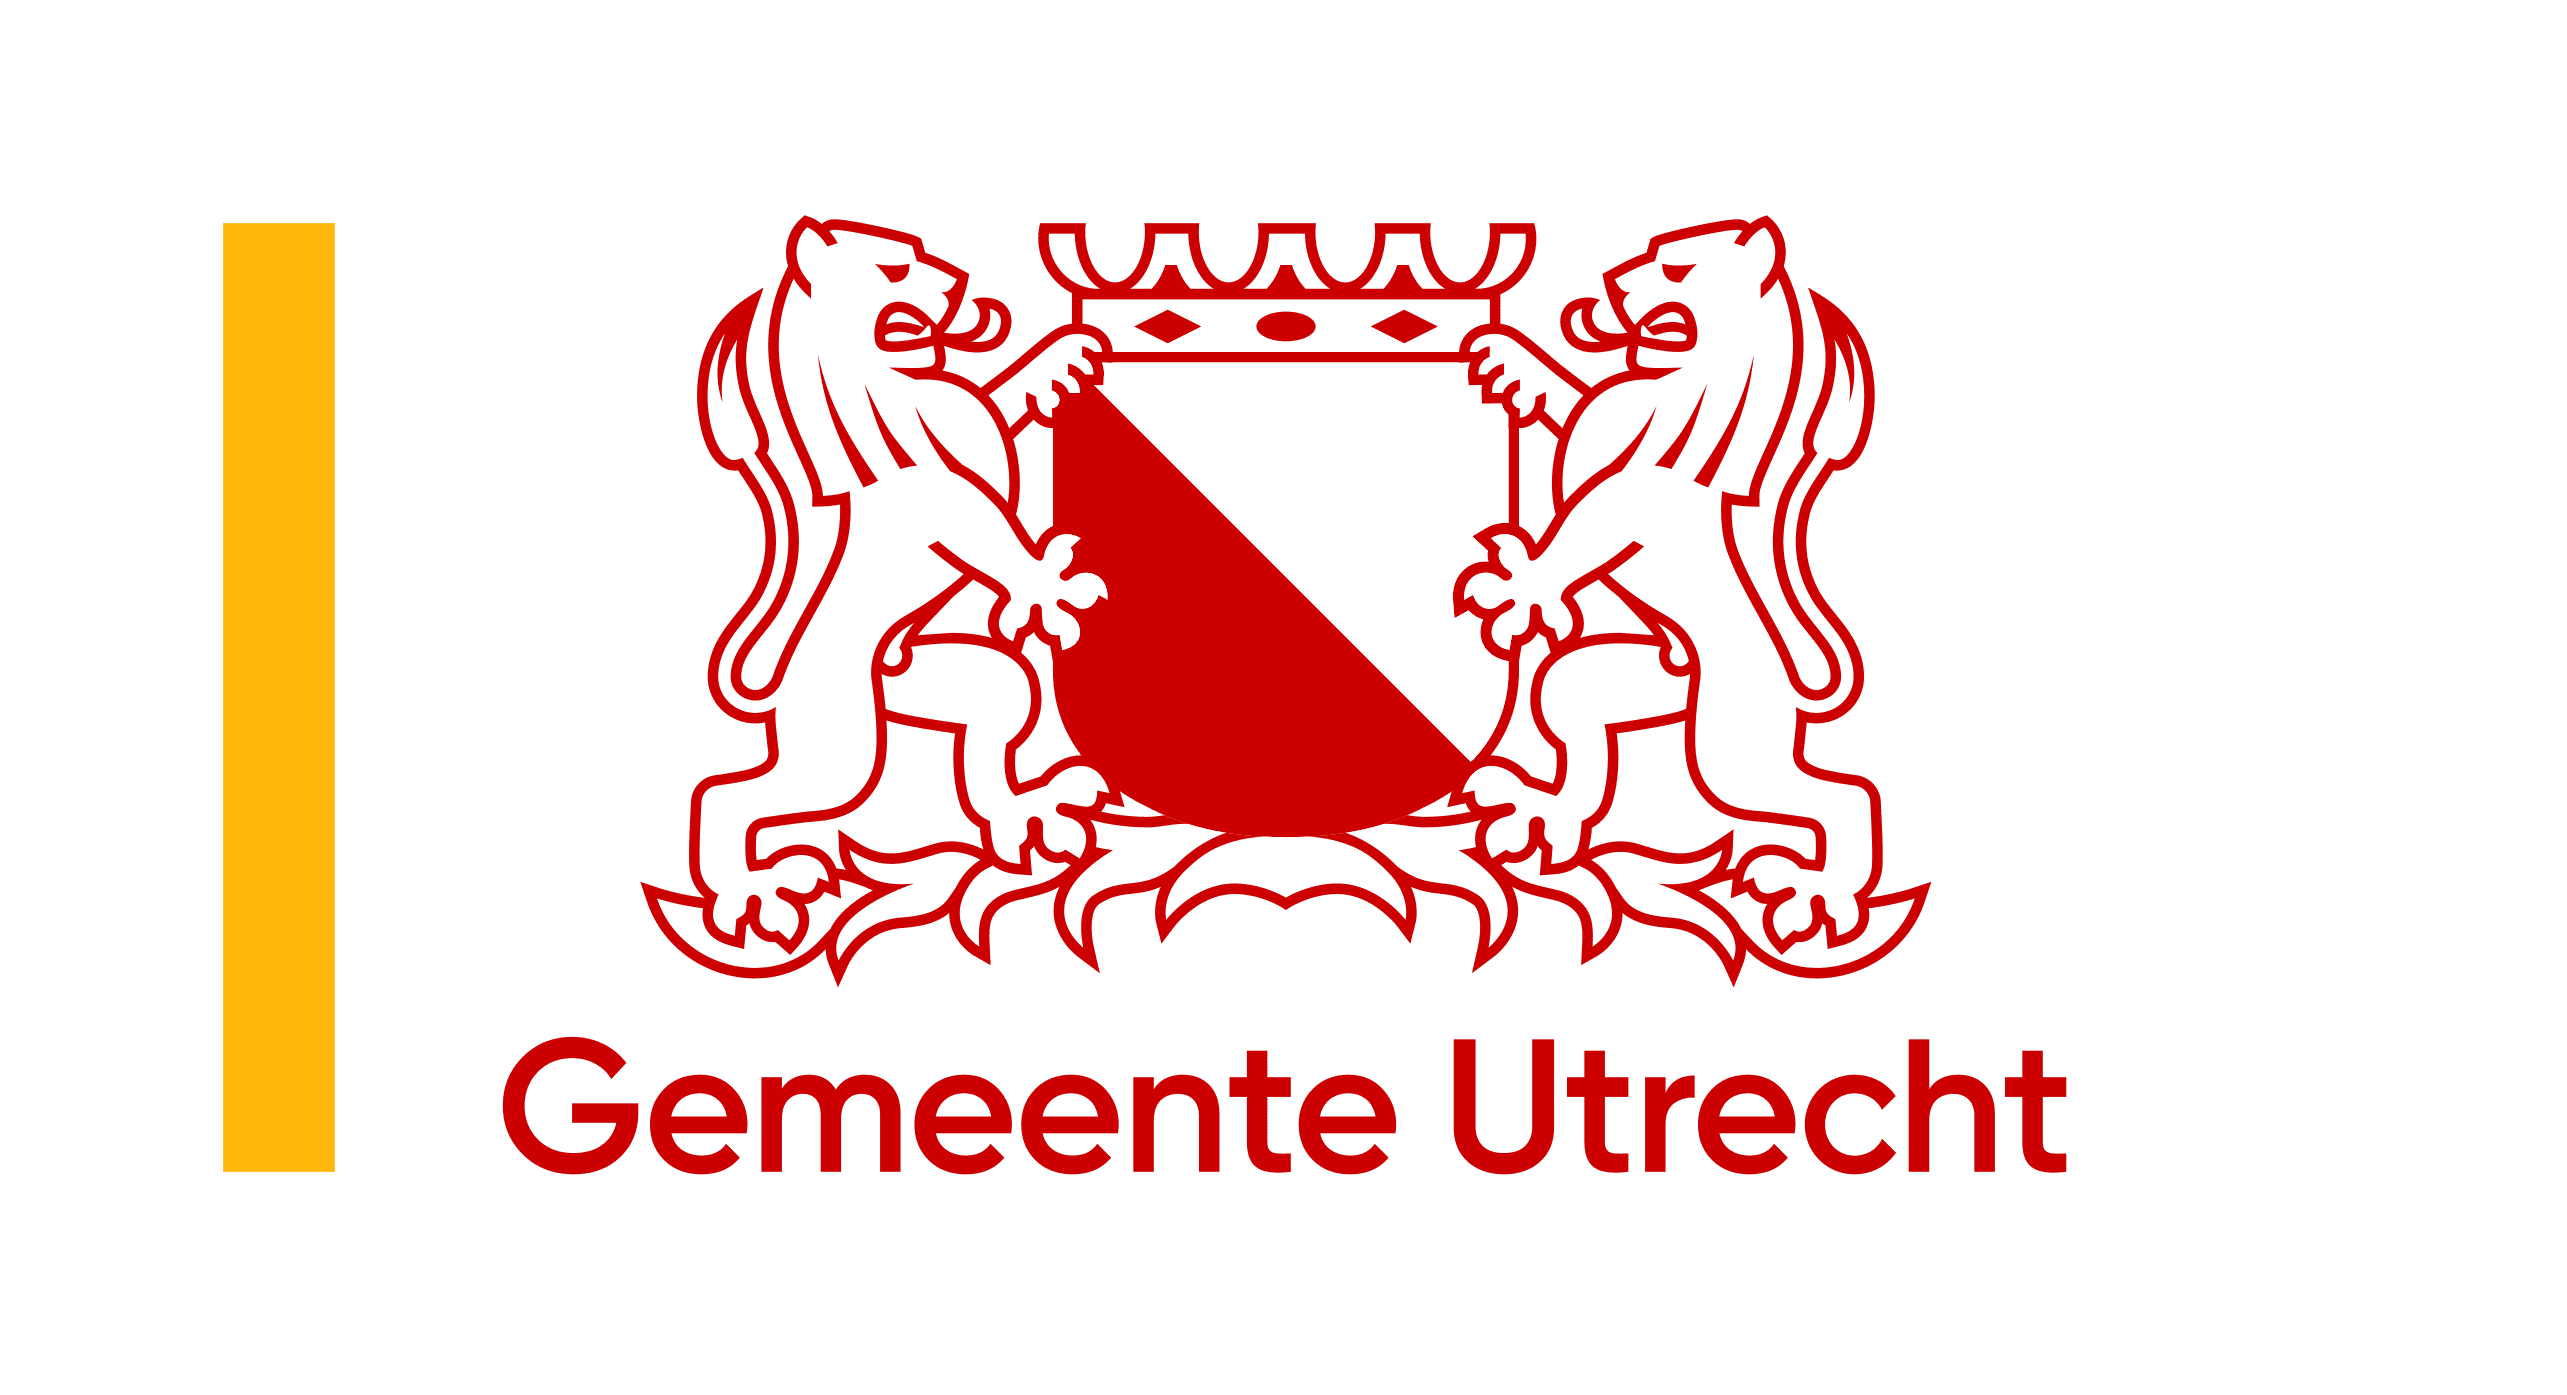 Gemeente Utrecht heeft een nieuw logo